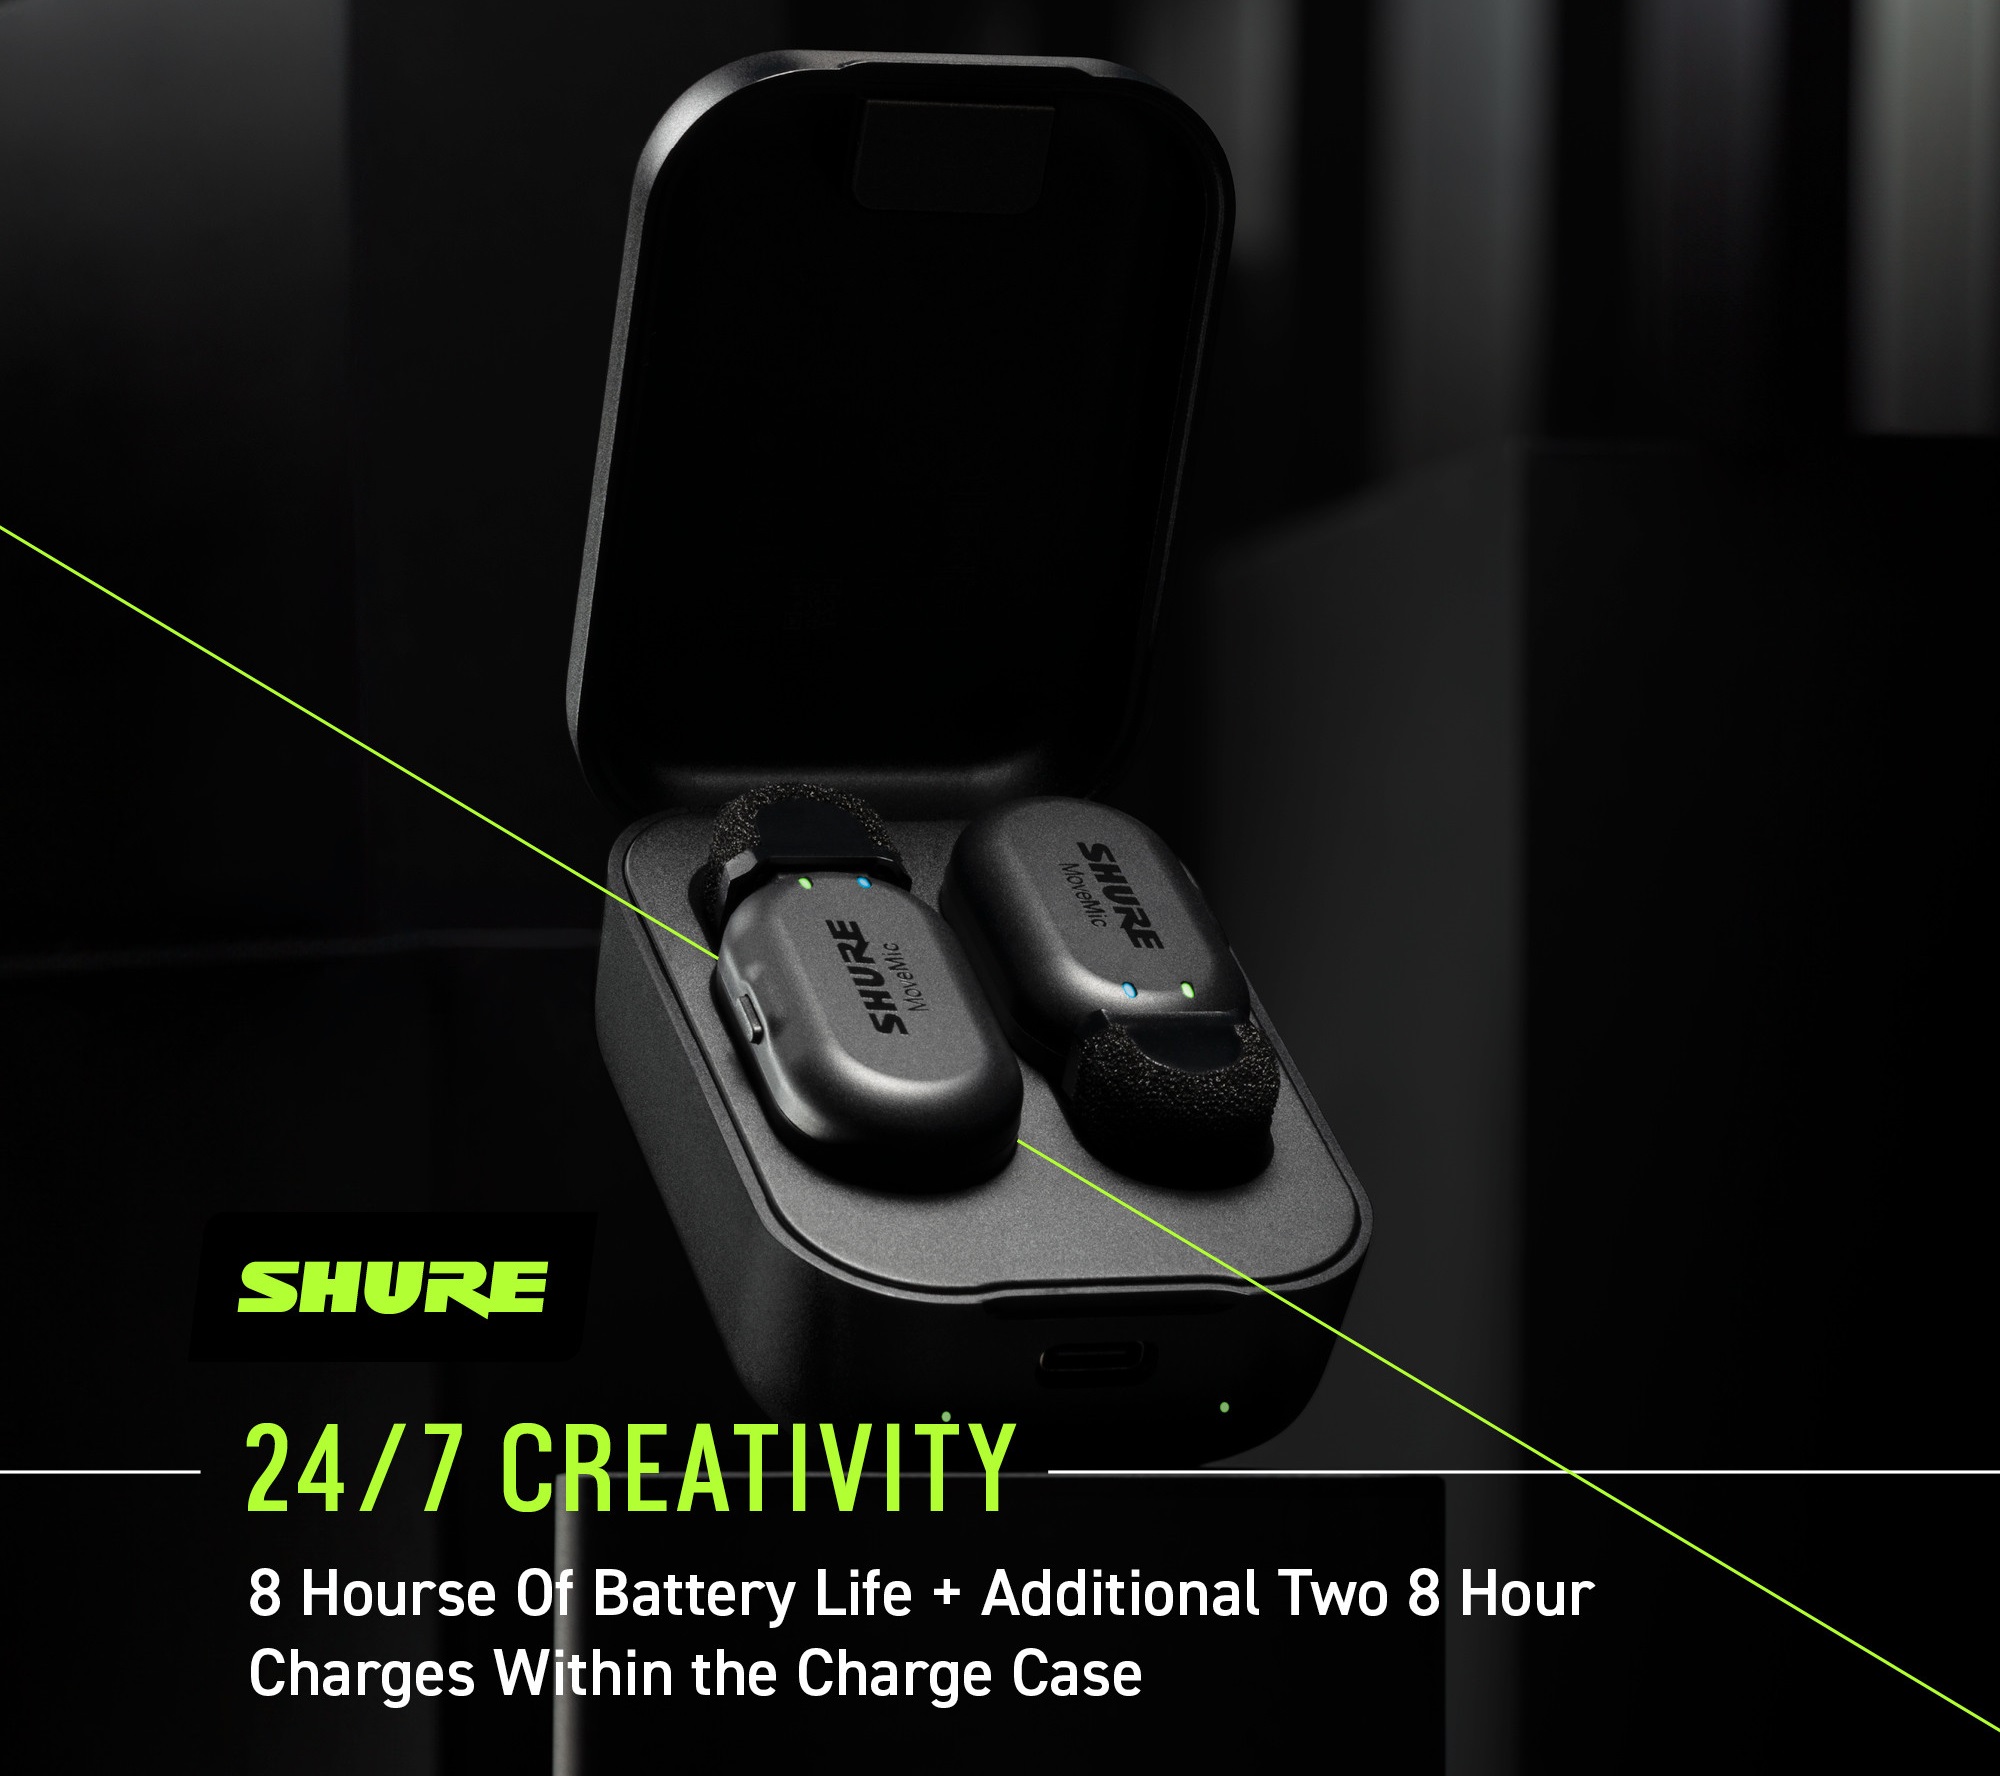 Micro không dây cài áo Shure MoveMic Two + Receiver Kit | Anh Duy Audio